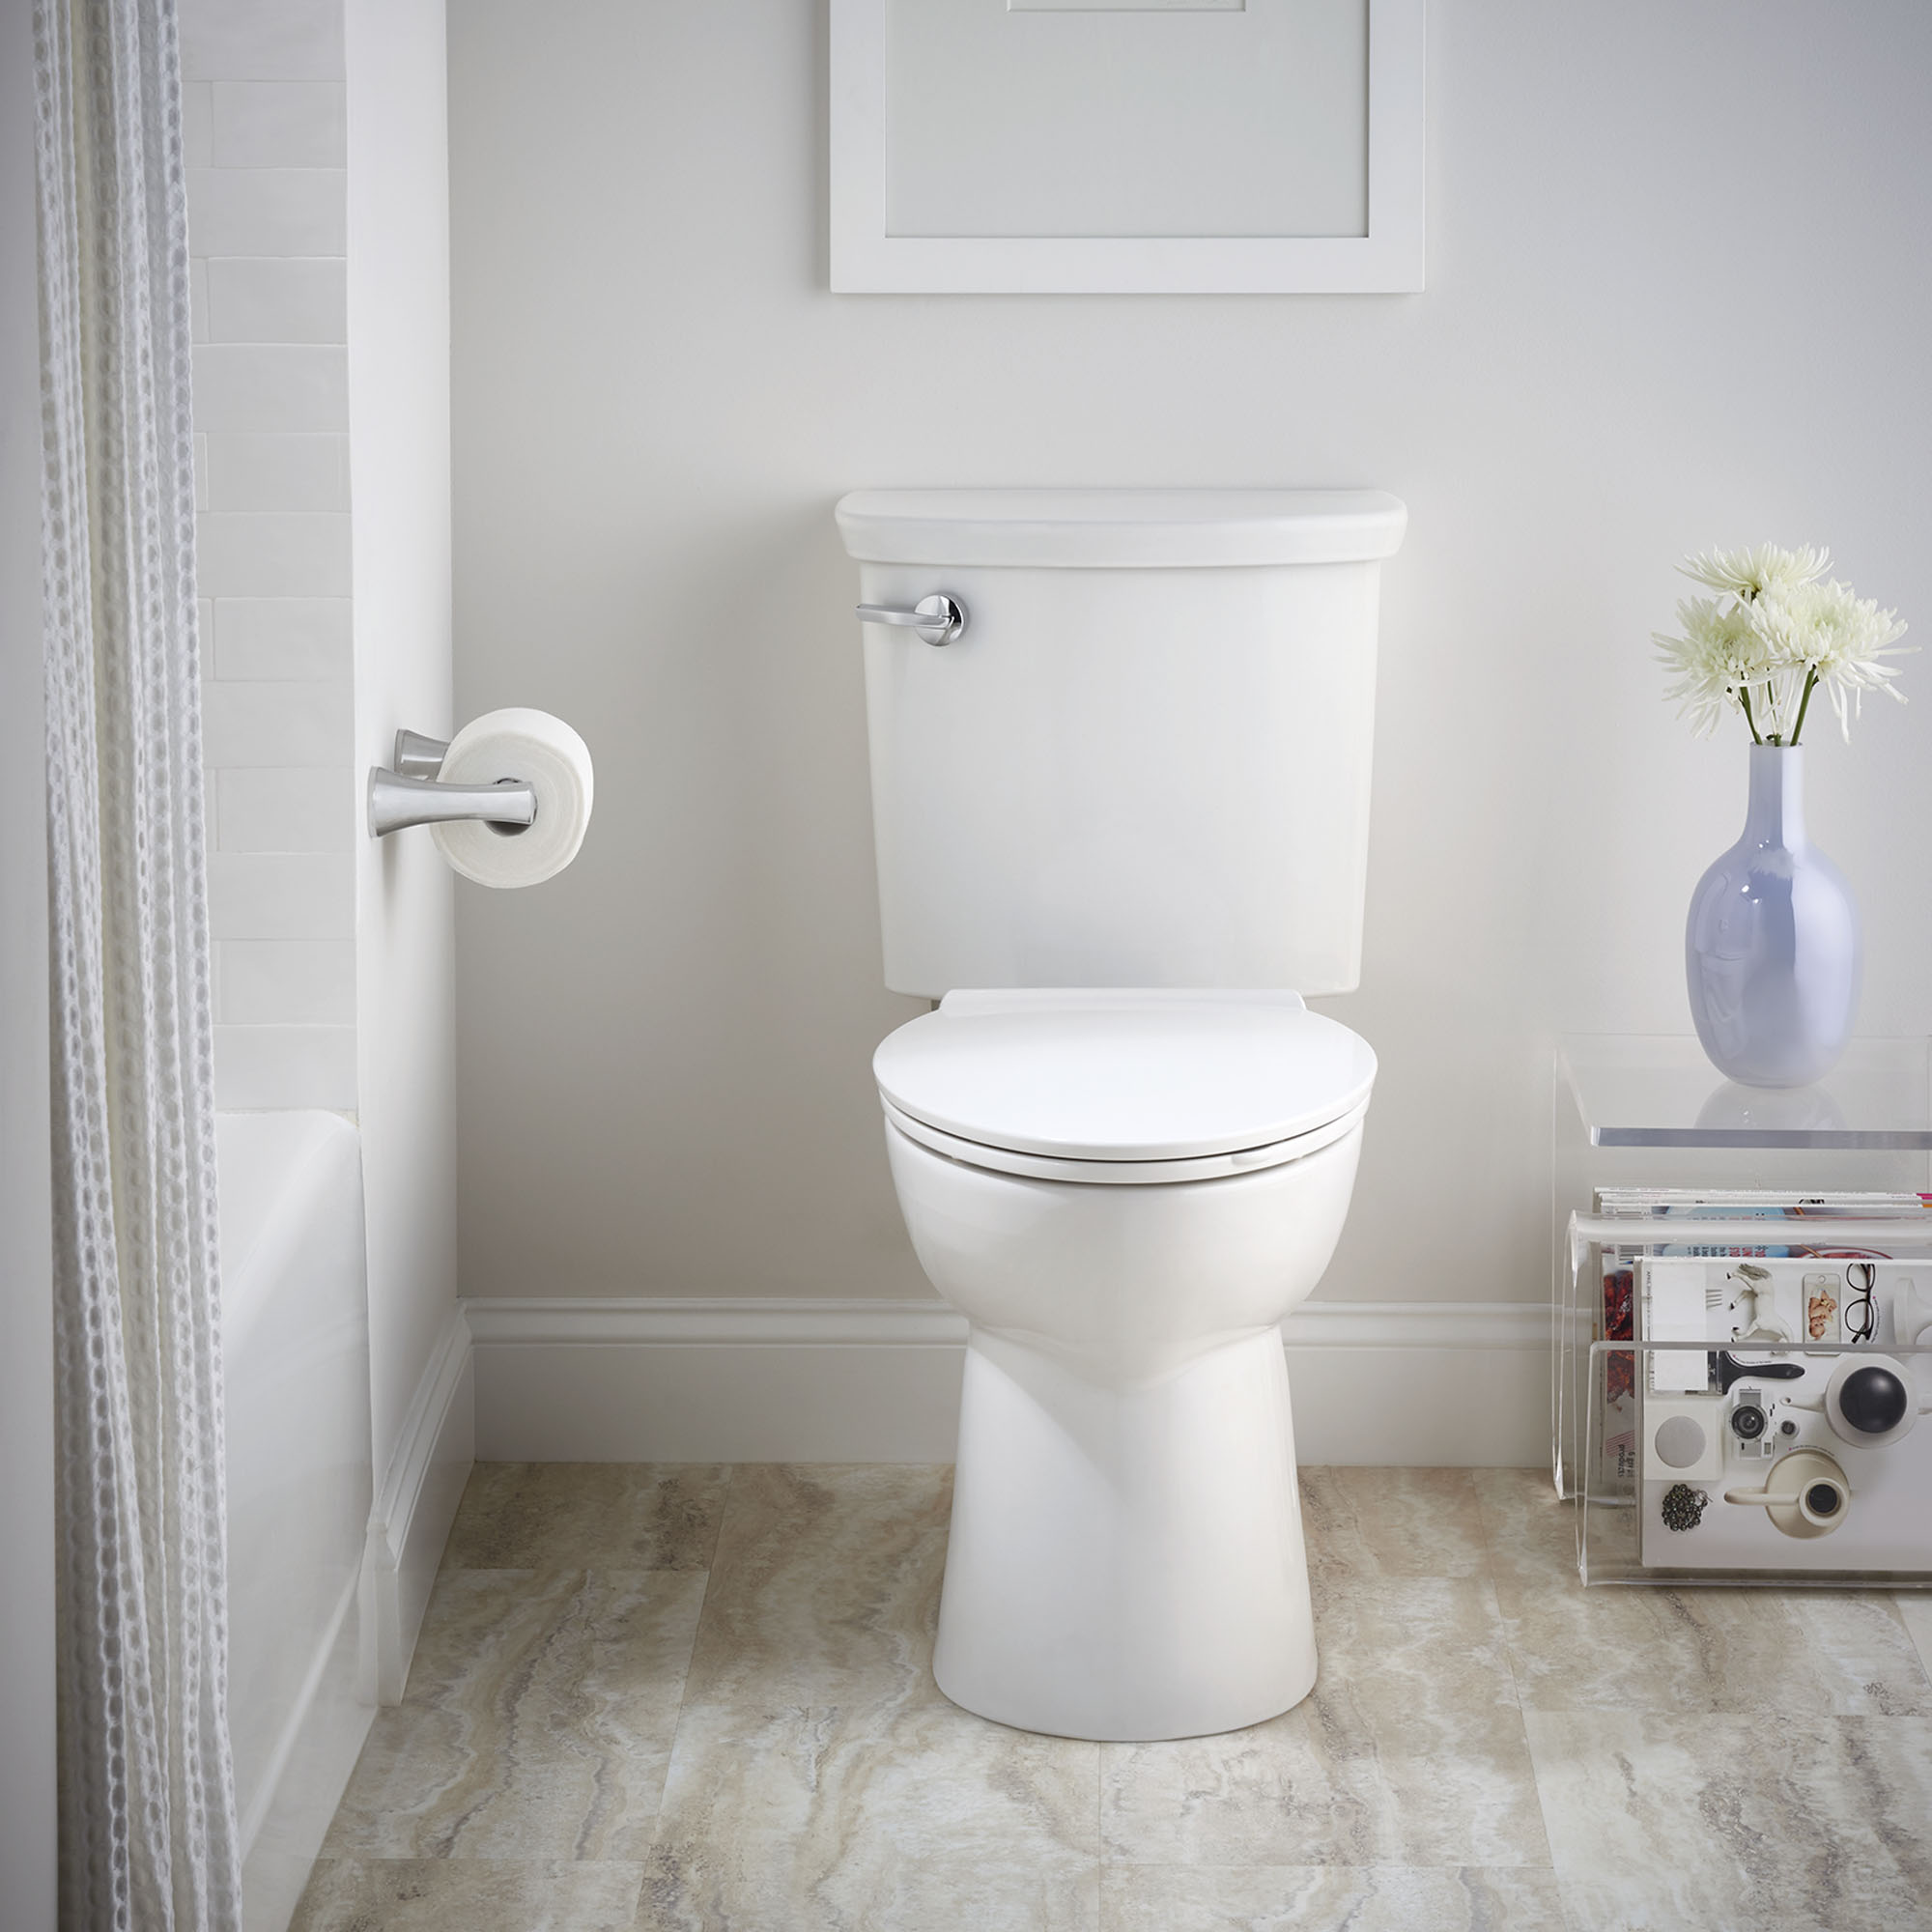 Toilette VorMax, 2 pièces, 1.0 gpc/3.8 lpc, à cuvette allongée à hauteur de chaise, sans siège